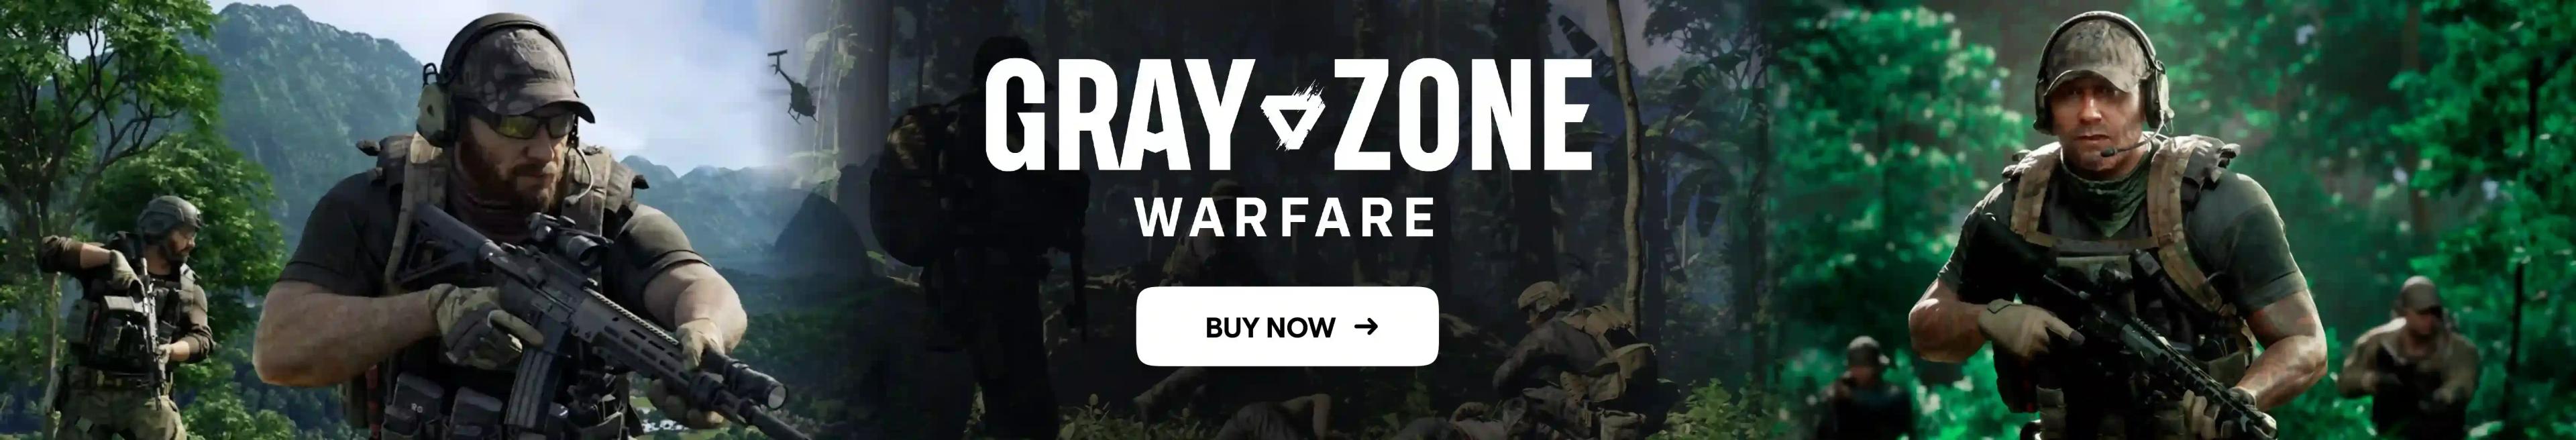 Gray zone warfare desktop